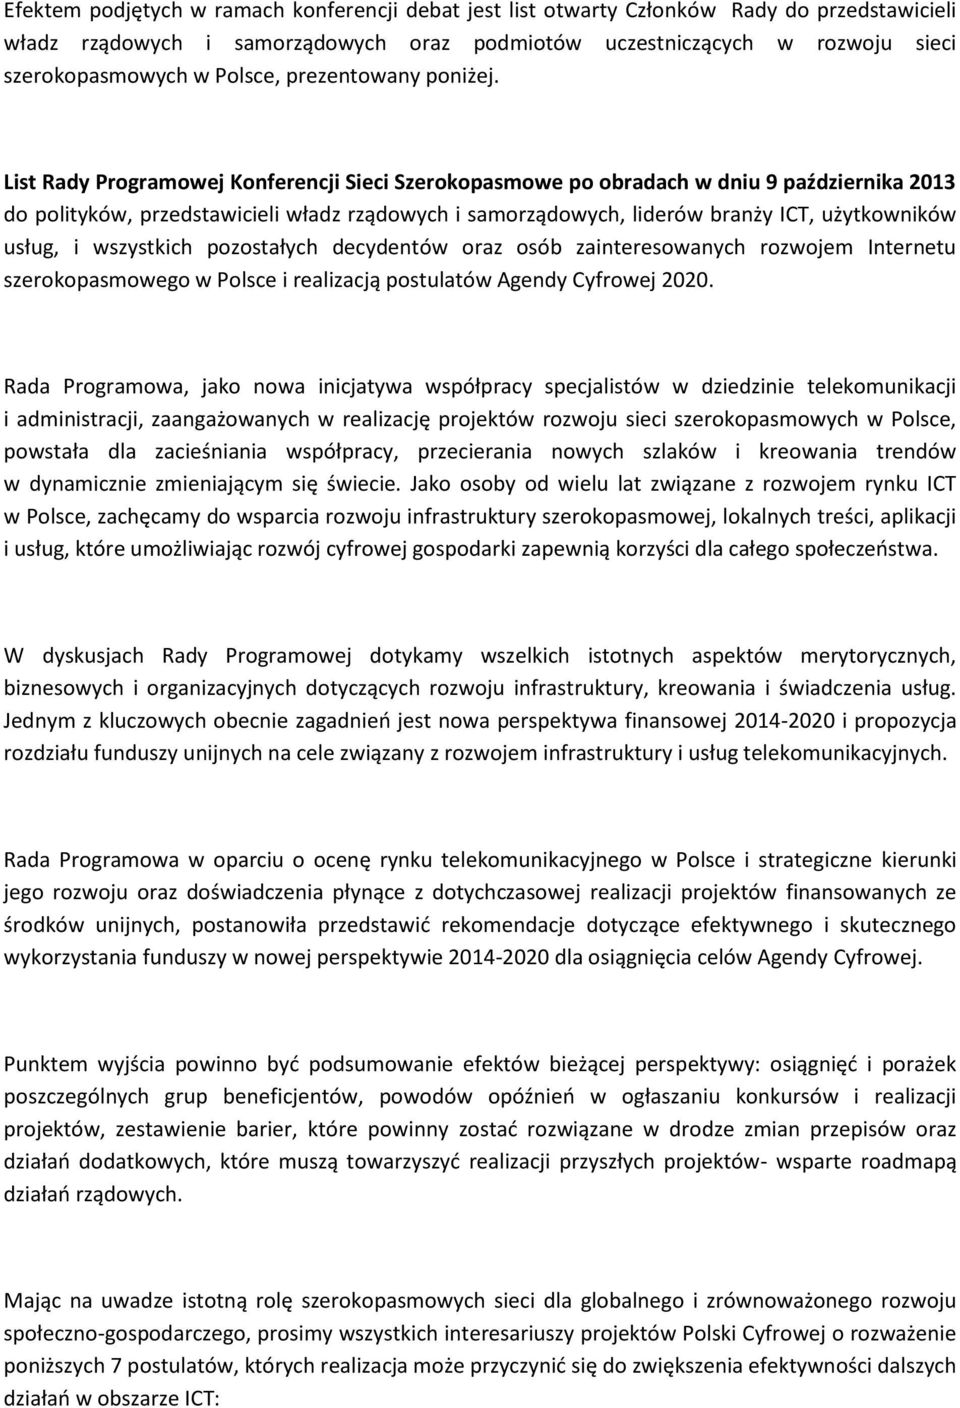 List Rady Programowej Konferencji Sieci Szerokopasmowe po obradach w dniu 9 października 2013 do polityków, przedstawicieli władz rządowych i samorządowych, liderów branży ICT, użytkowników usług, i